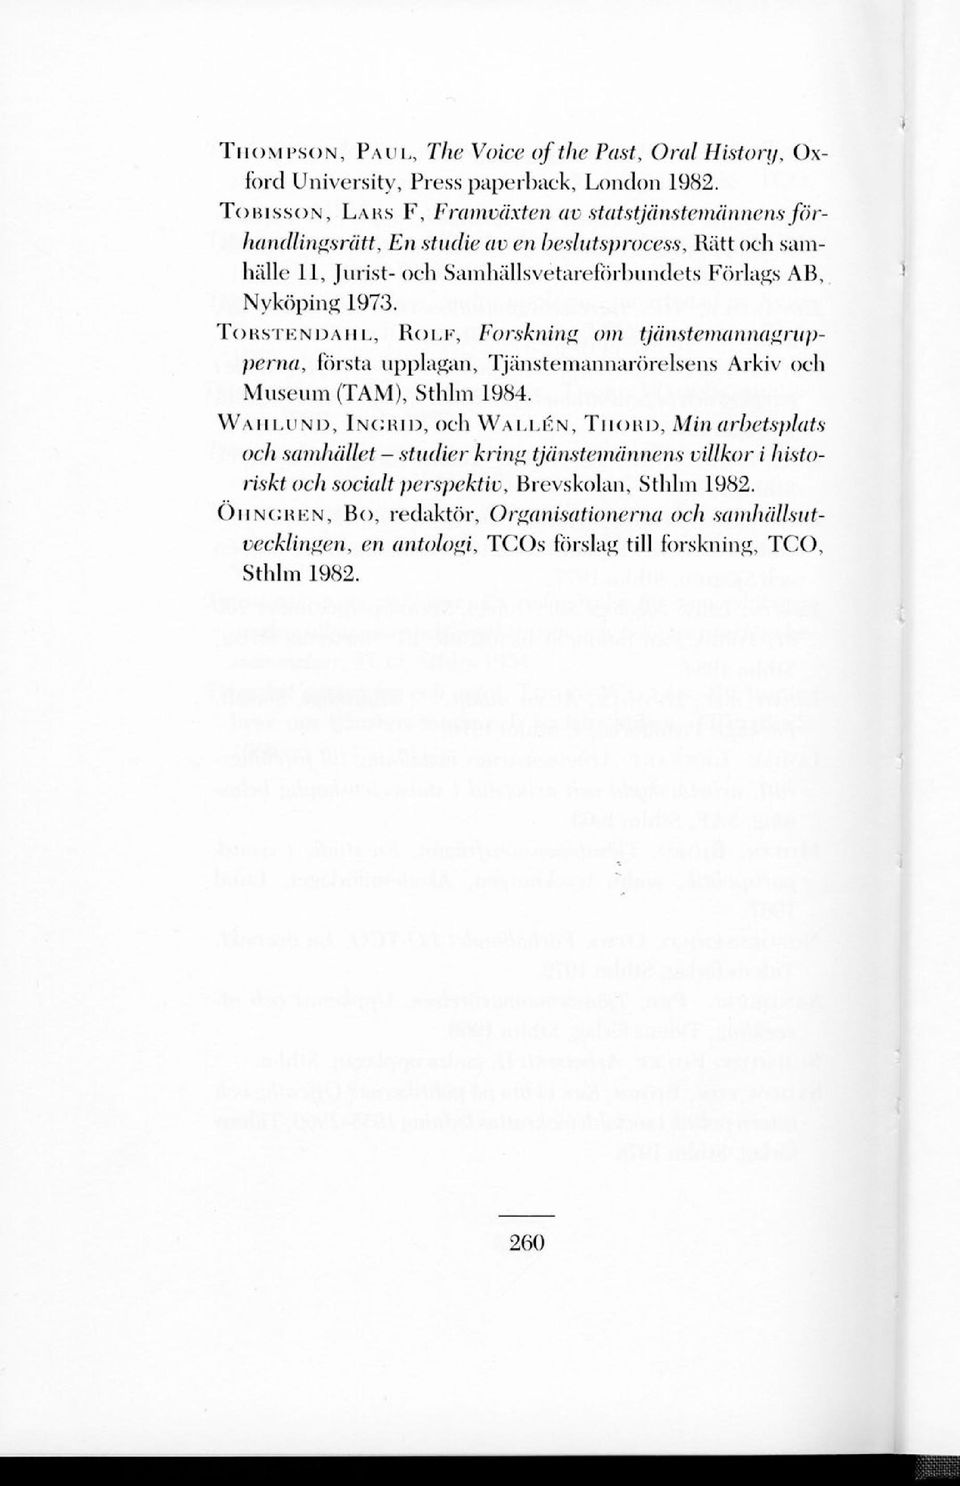 Nyköping 1973. TORSTENDAHL, ROLF, Forskning om tjänstemannagrupperna, första upplagan, Tjänstemannarörelsens Arkiv och Museum (TAM), Sthlm 1984.